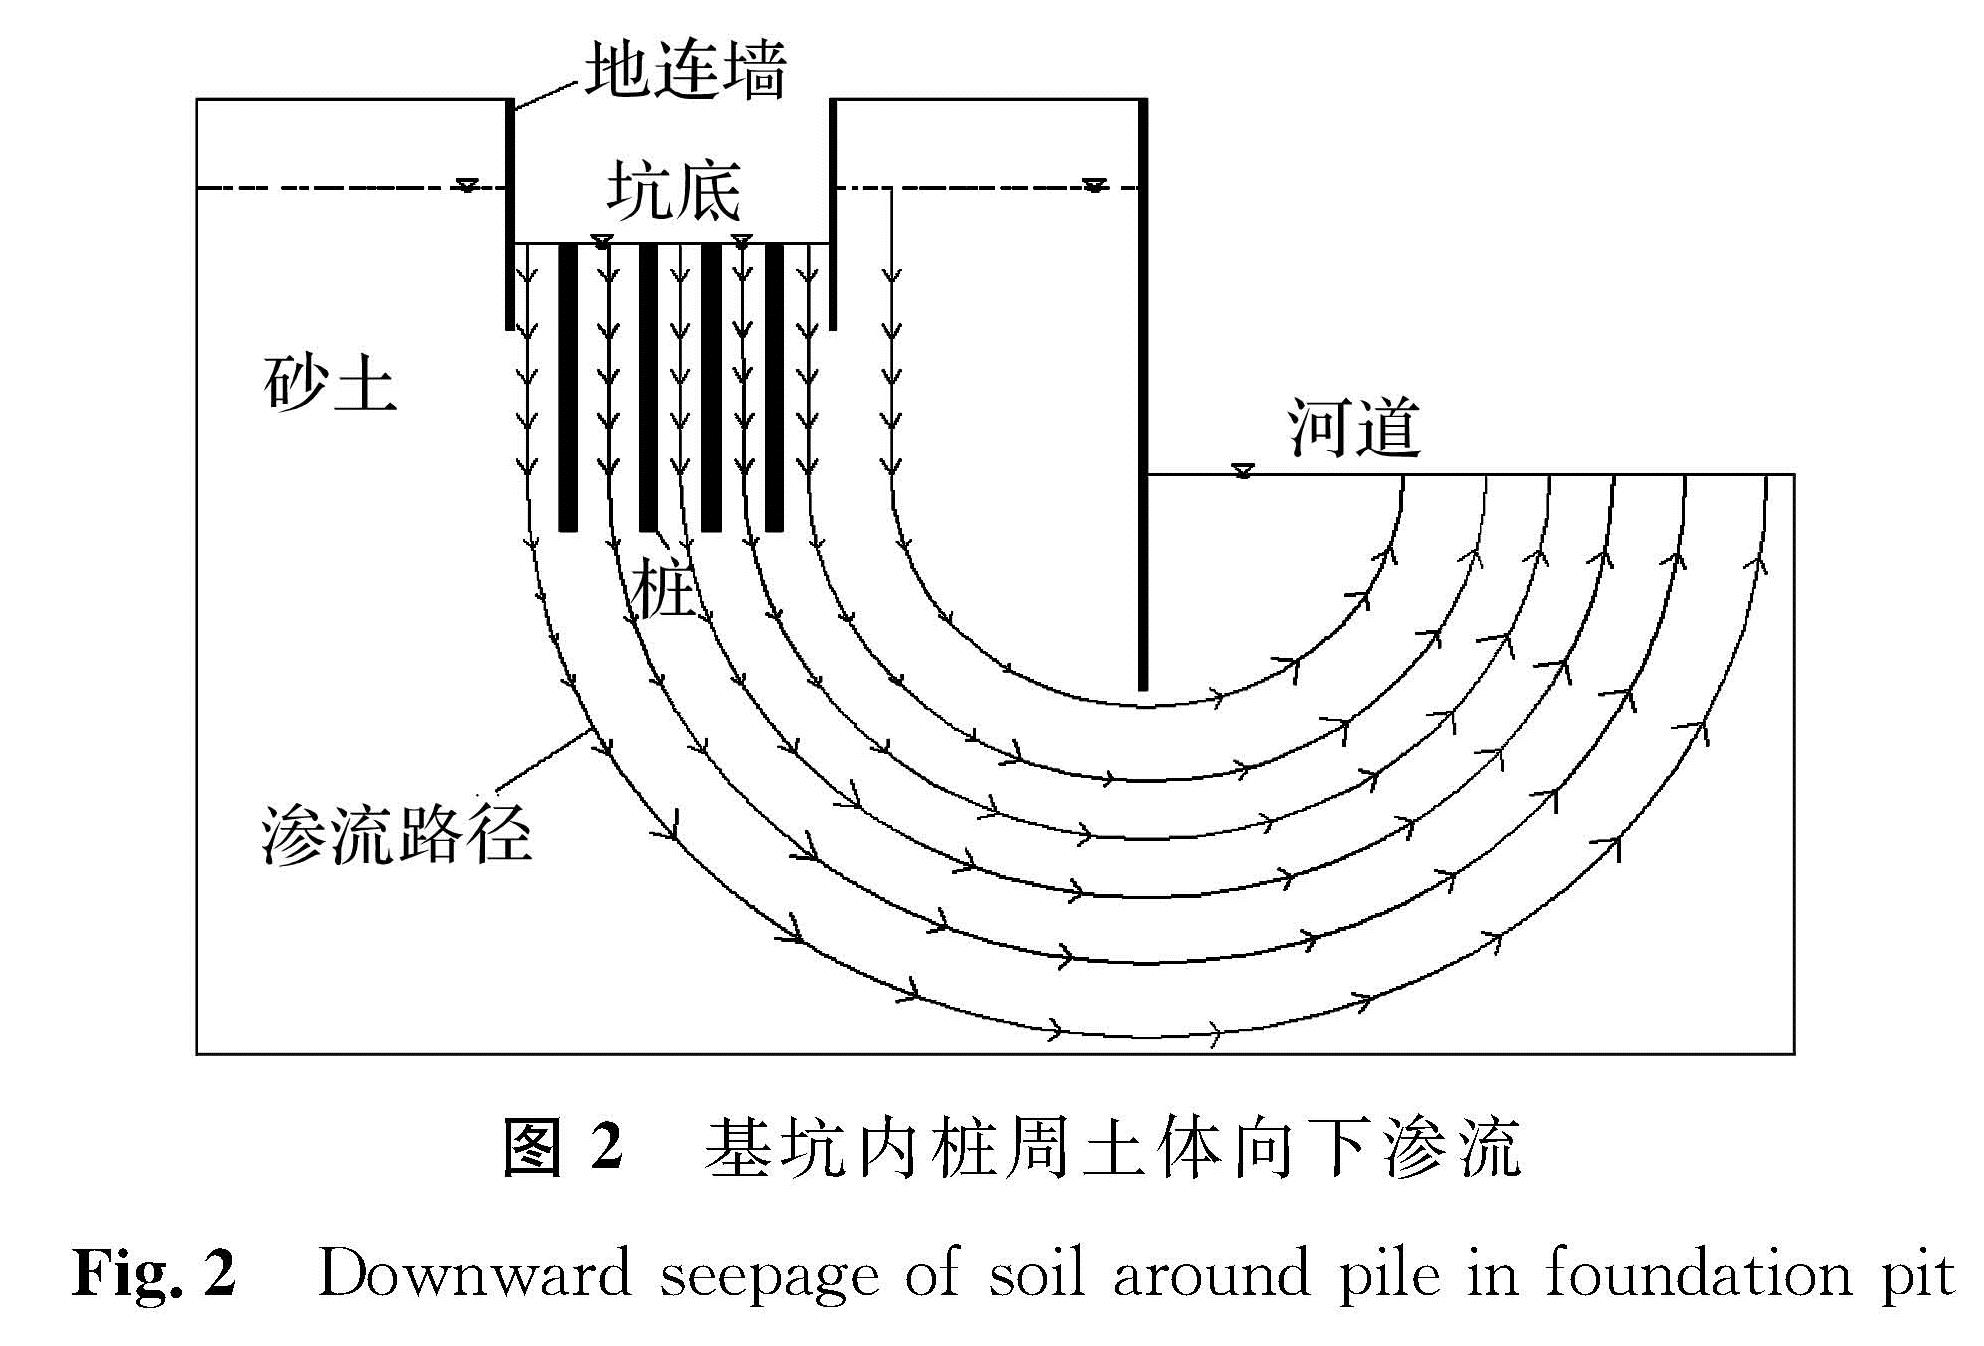 图2 基坑内桩周土体向下渗流<br/>Fig.2 Downward seepage of soil around pile in foundation pit